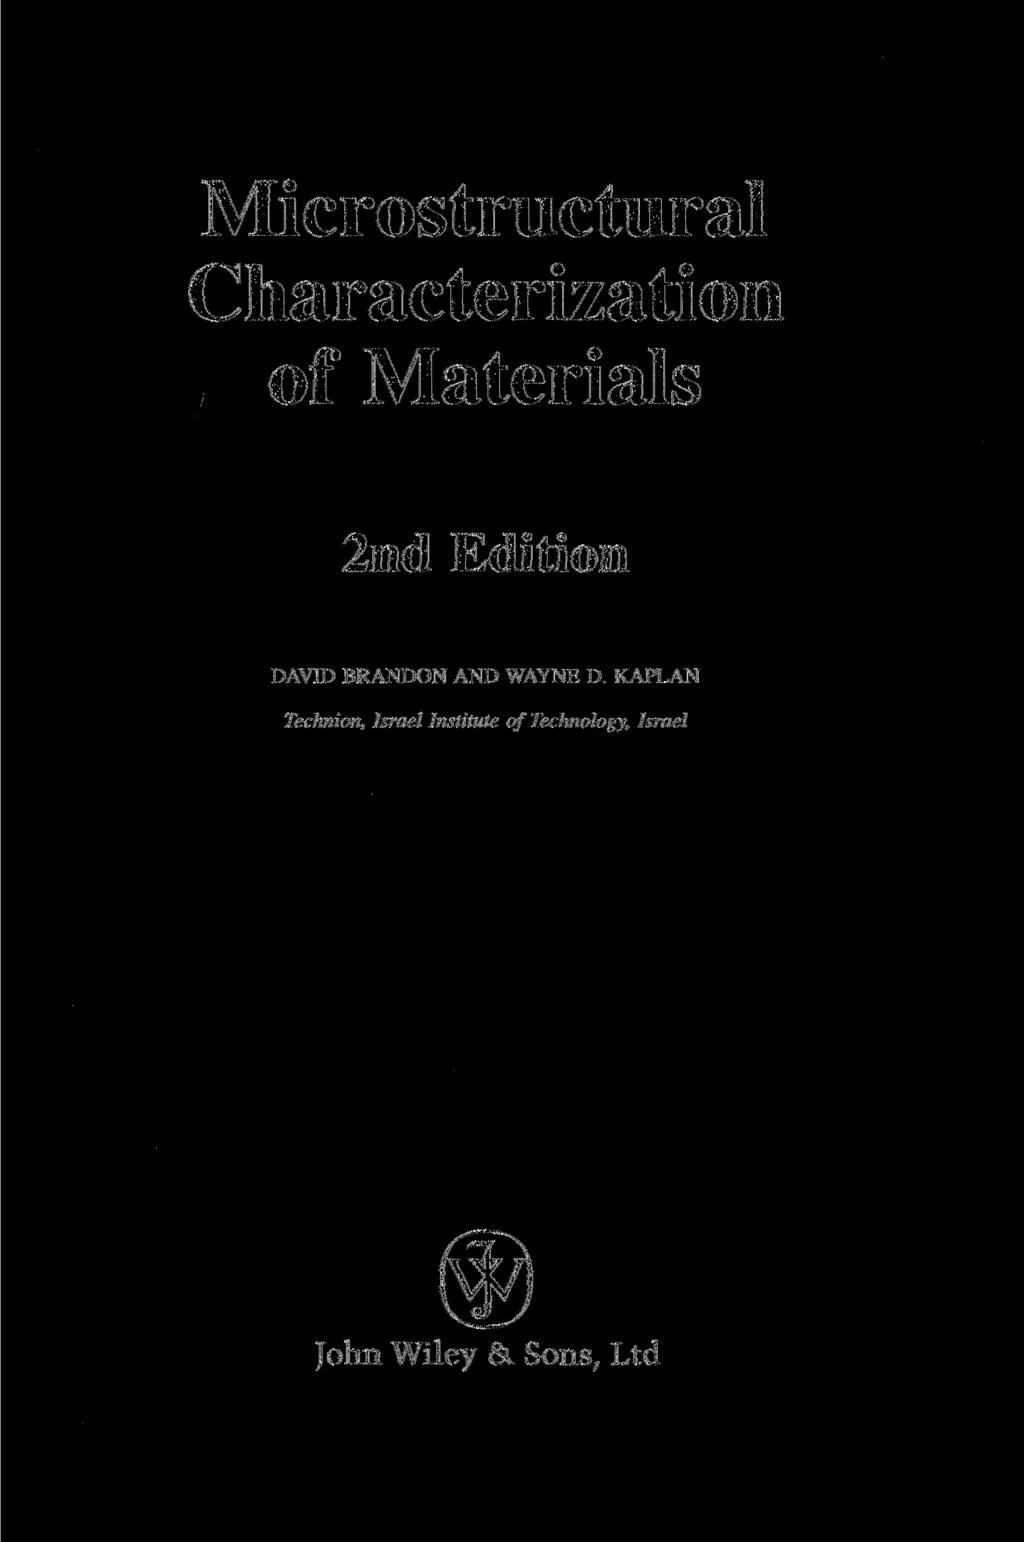 Microstructural Characterization of Materials 2nd Edition DAVID BRANDON AND WAYNE